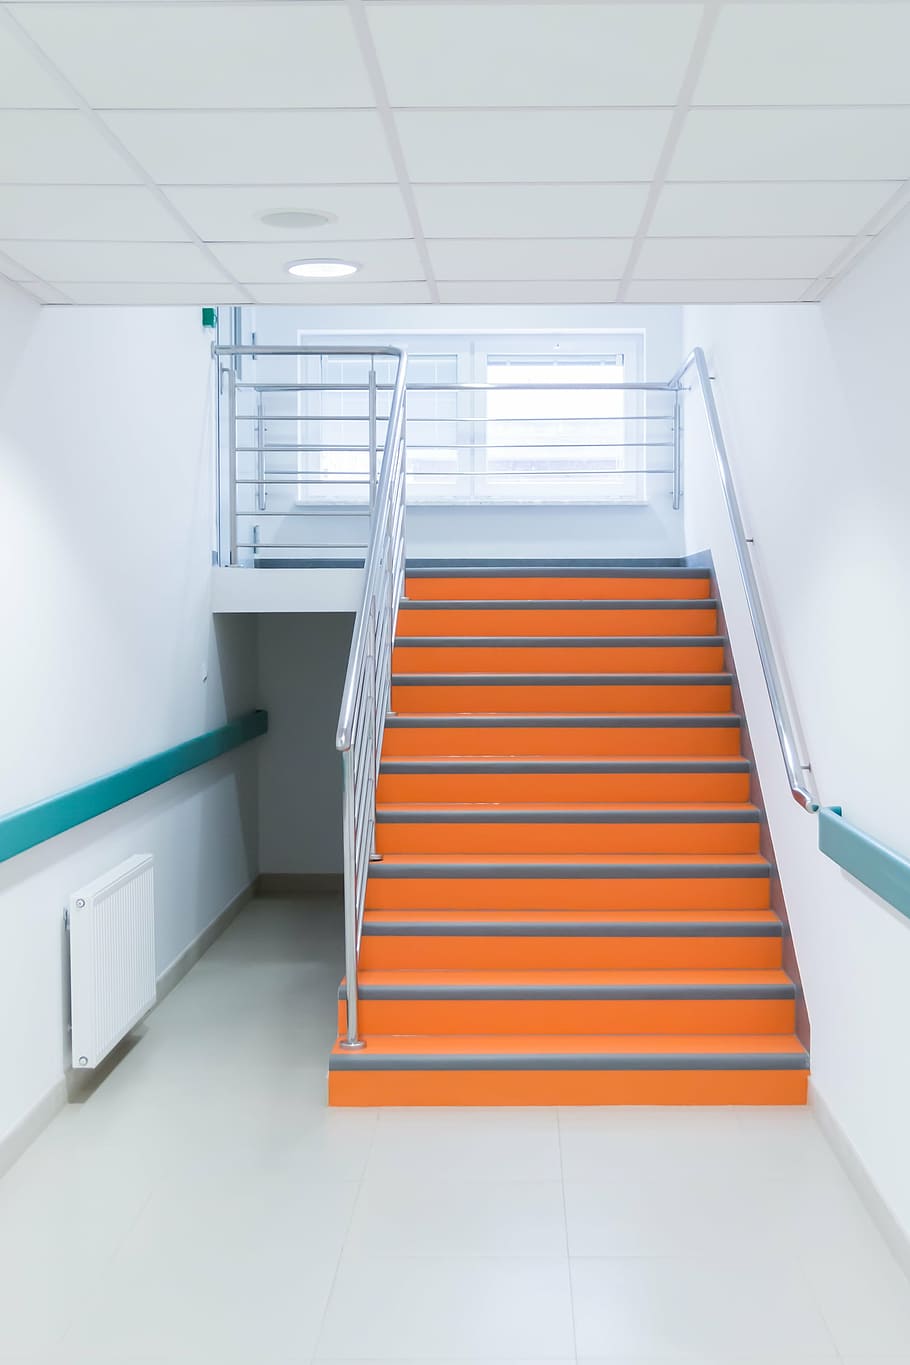 オレンジ, グレー, 階段, 廊下, 病院, 屋内, オレンジ色, 低角度のビュー, 人なし, 階段と階段